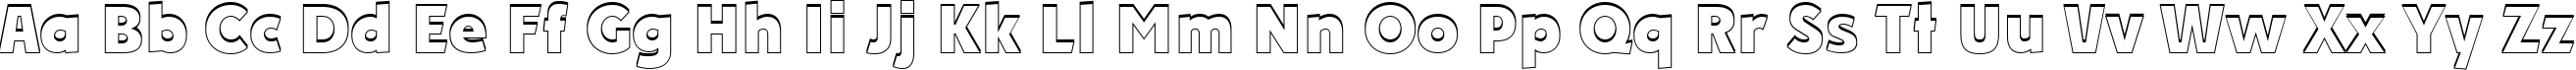 Пример написания английского алфавита шрифтом a_PlakatCmplSh ExtraBold